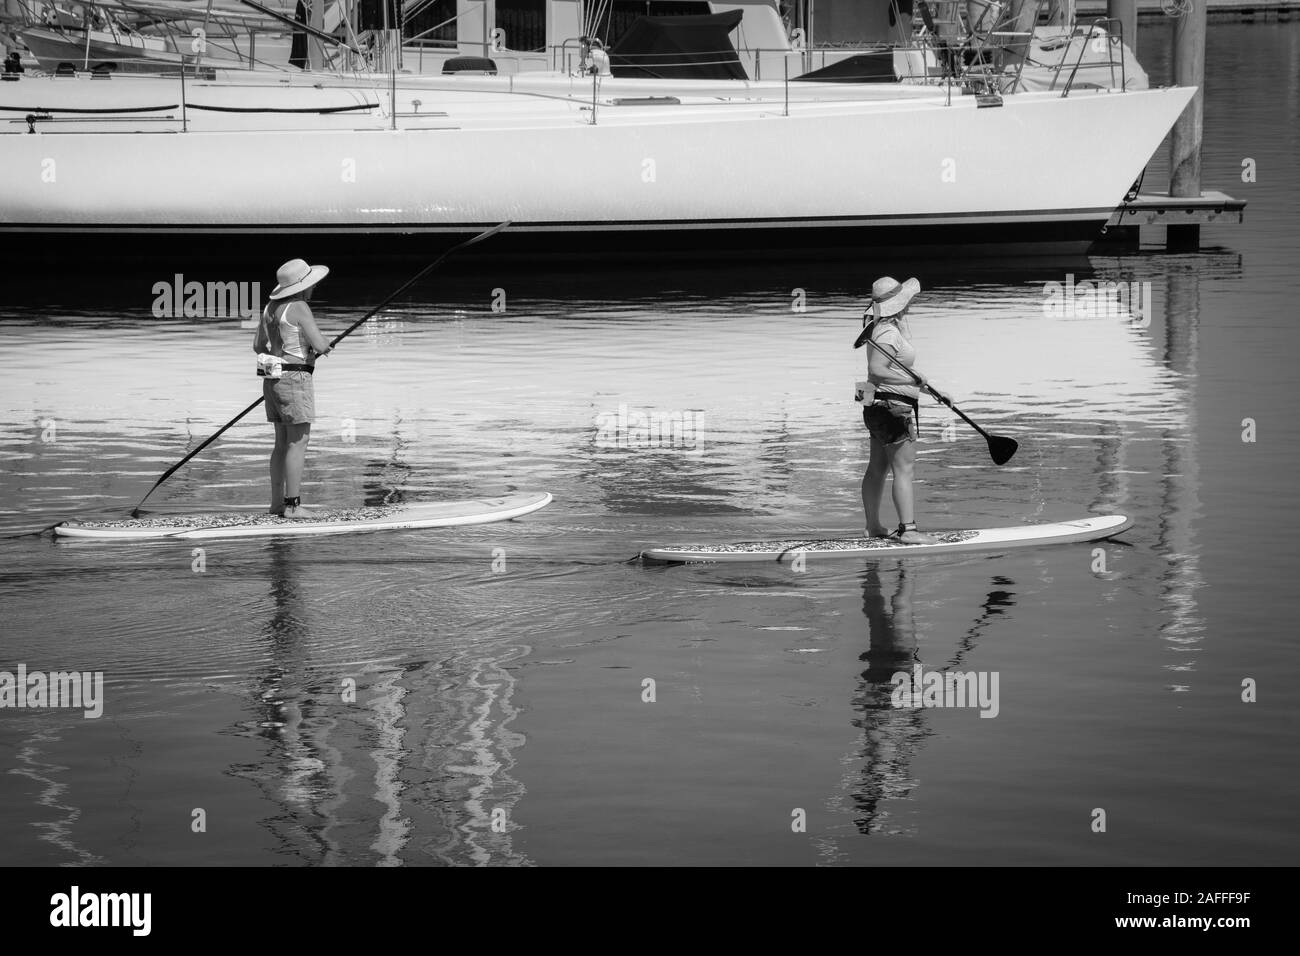 Deux femmes manoeuvrer leur stand up paddle boards dans un canal près de bateaux ancrés dans le port de plaisance dans le port de Santa Barbara, Santa Barbara, CA Banque D'Images